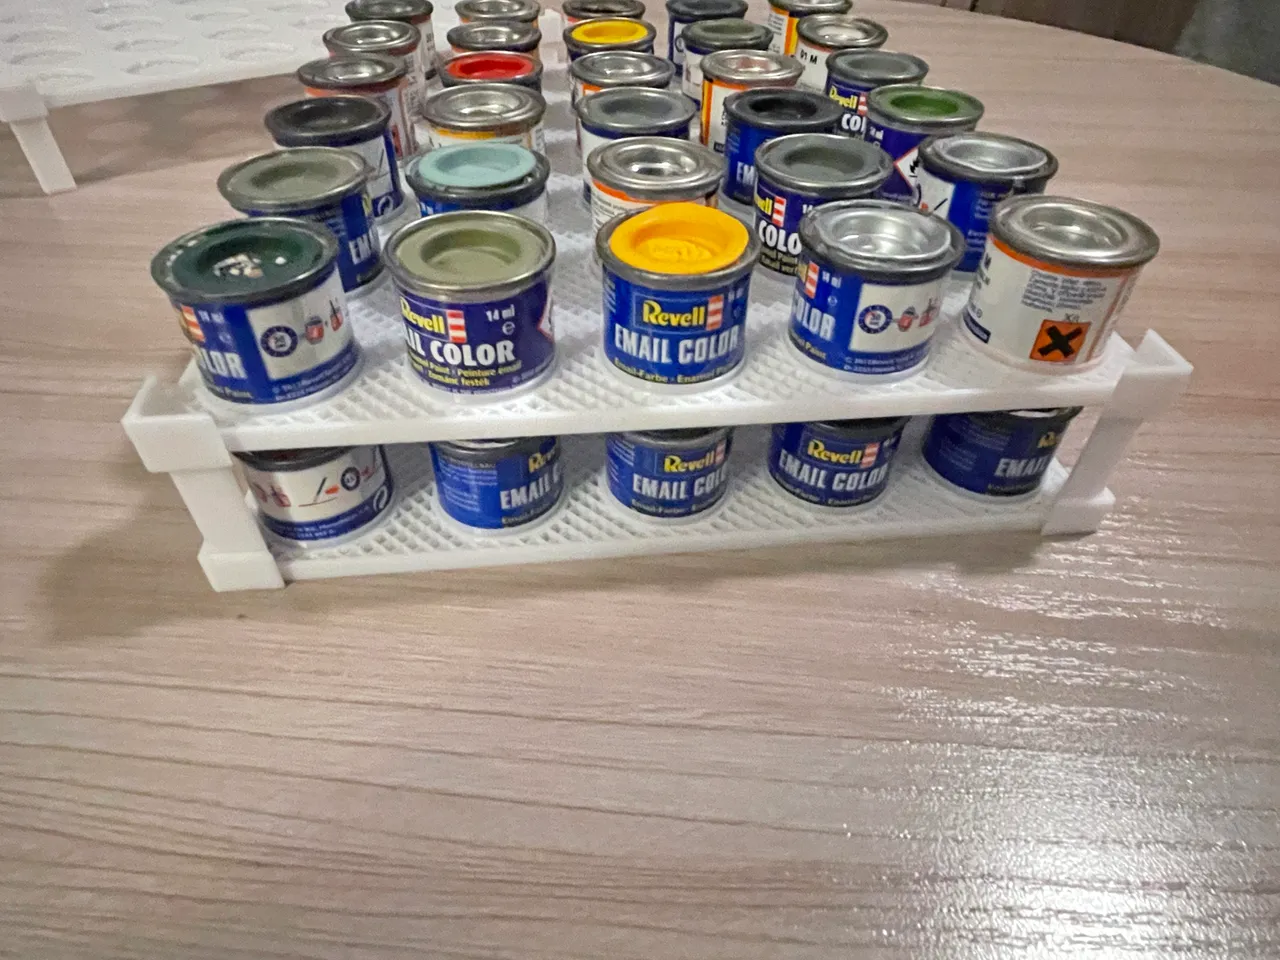 Paint can organizer for Revell cans - organizér/paletky pro skladování  modelářských barev - Revell plechovek by Majkl, Download free STL model